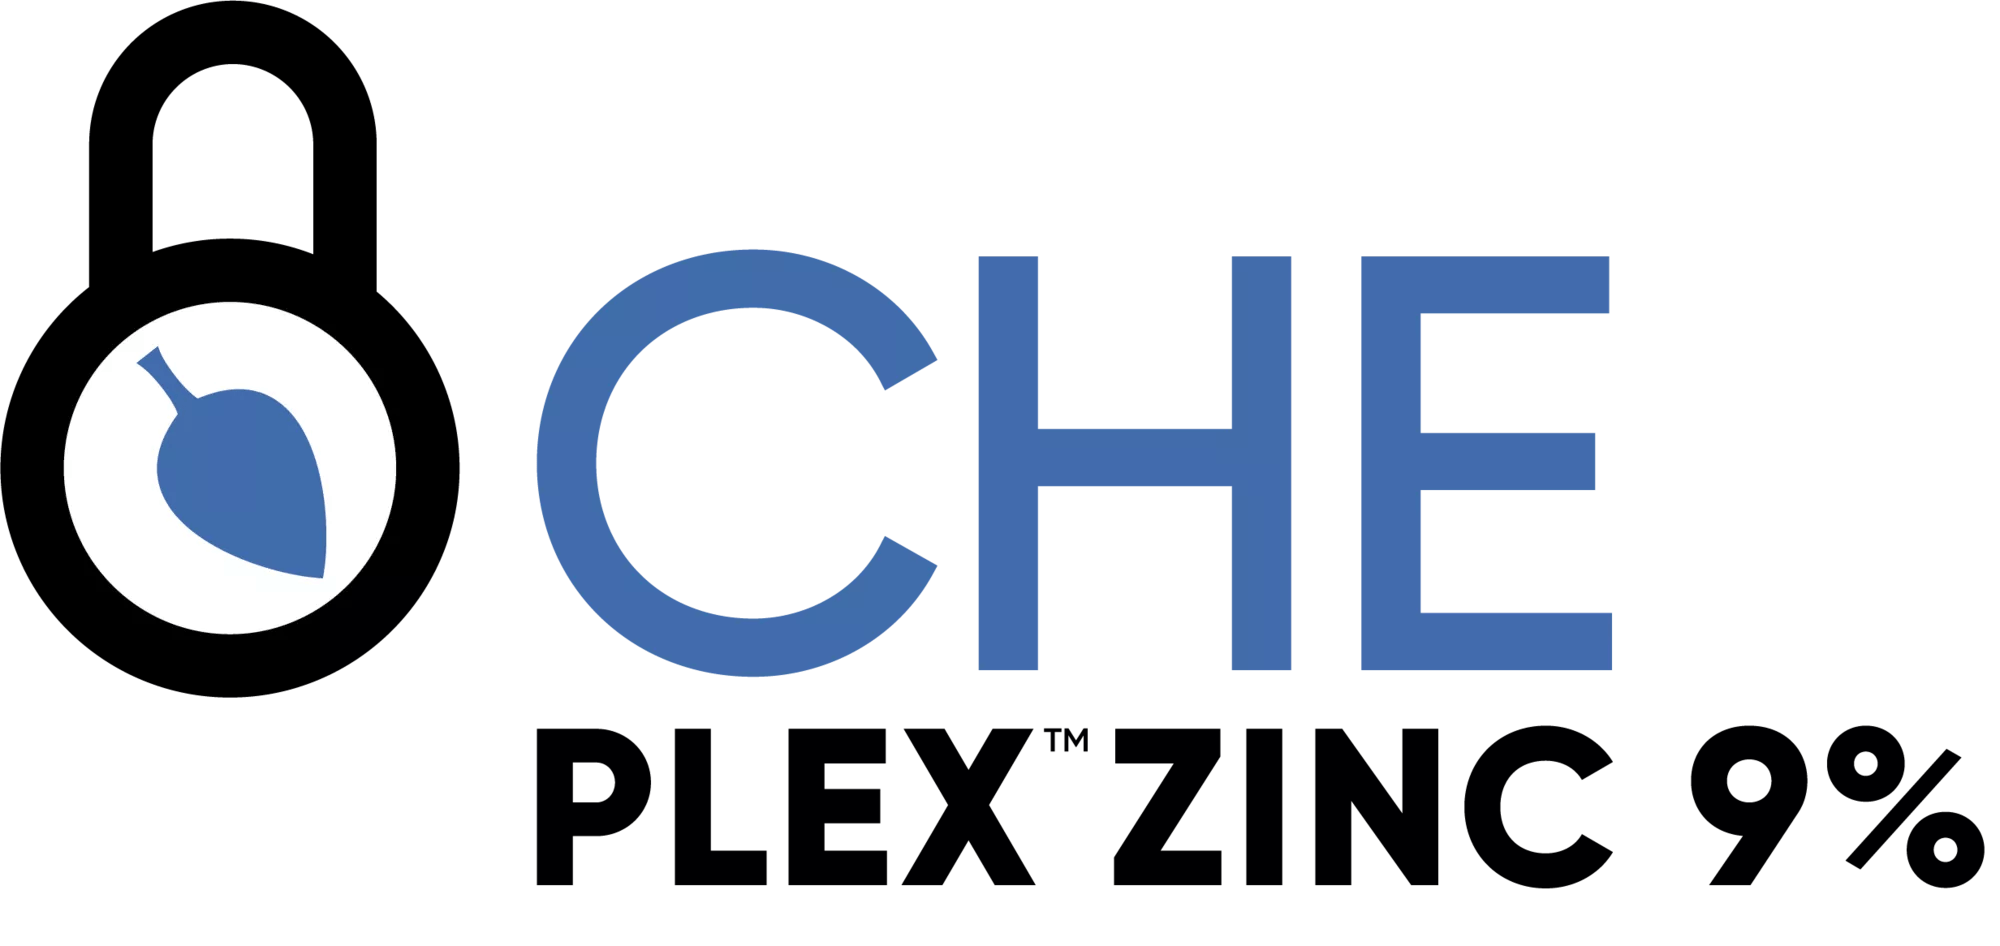 Che-Plex Zinc 9% 5-0-0